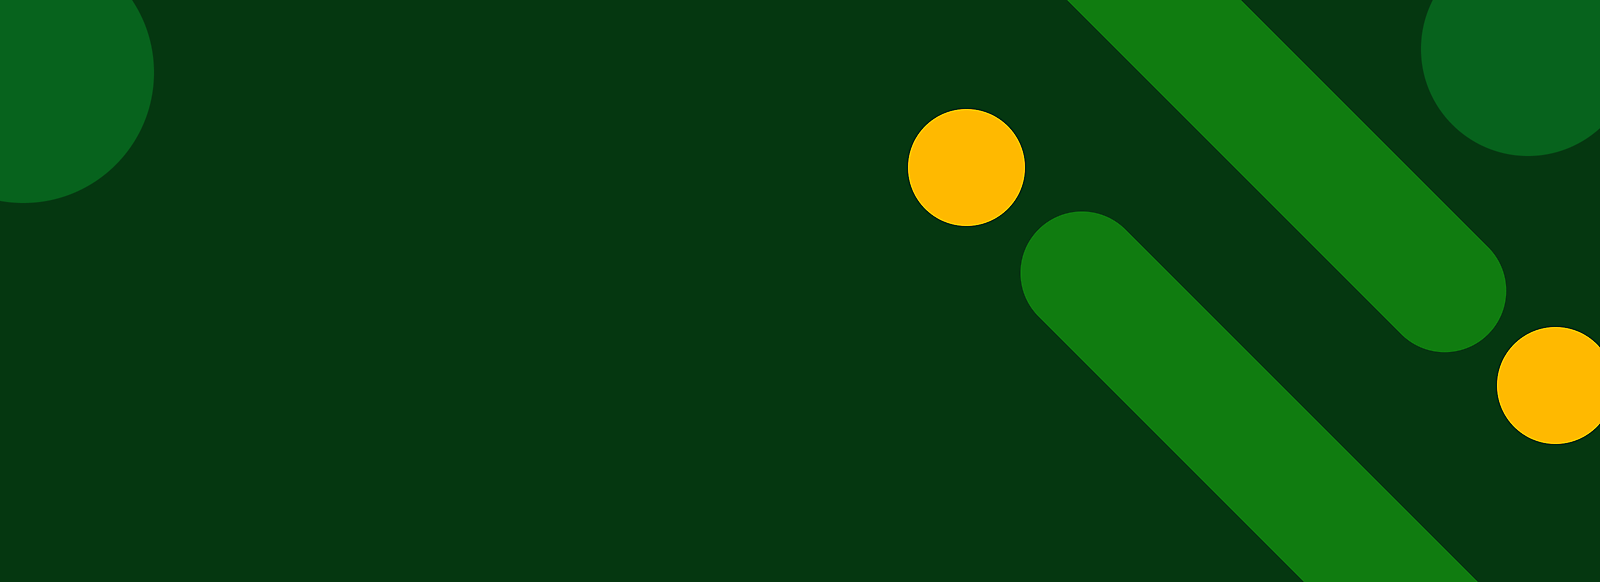 Abstraktné zelené pozadie so žltými bodkami a diagonálnymi zelenými pruhmi.